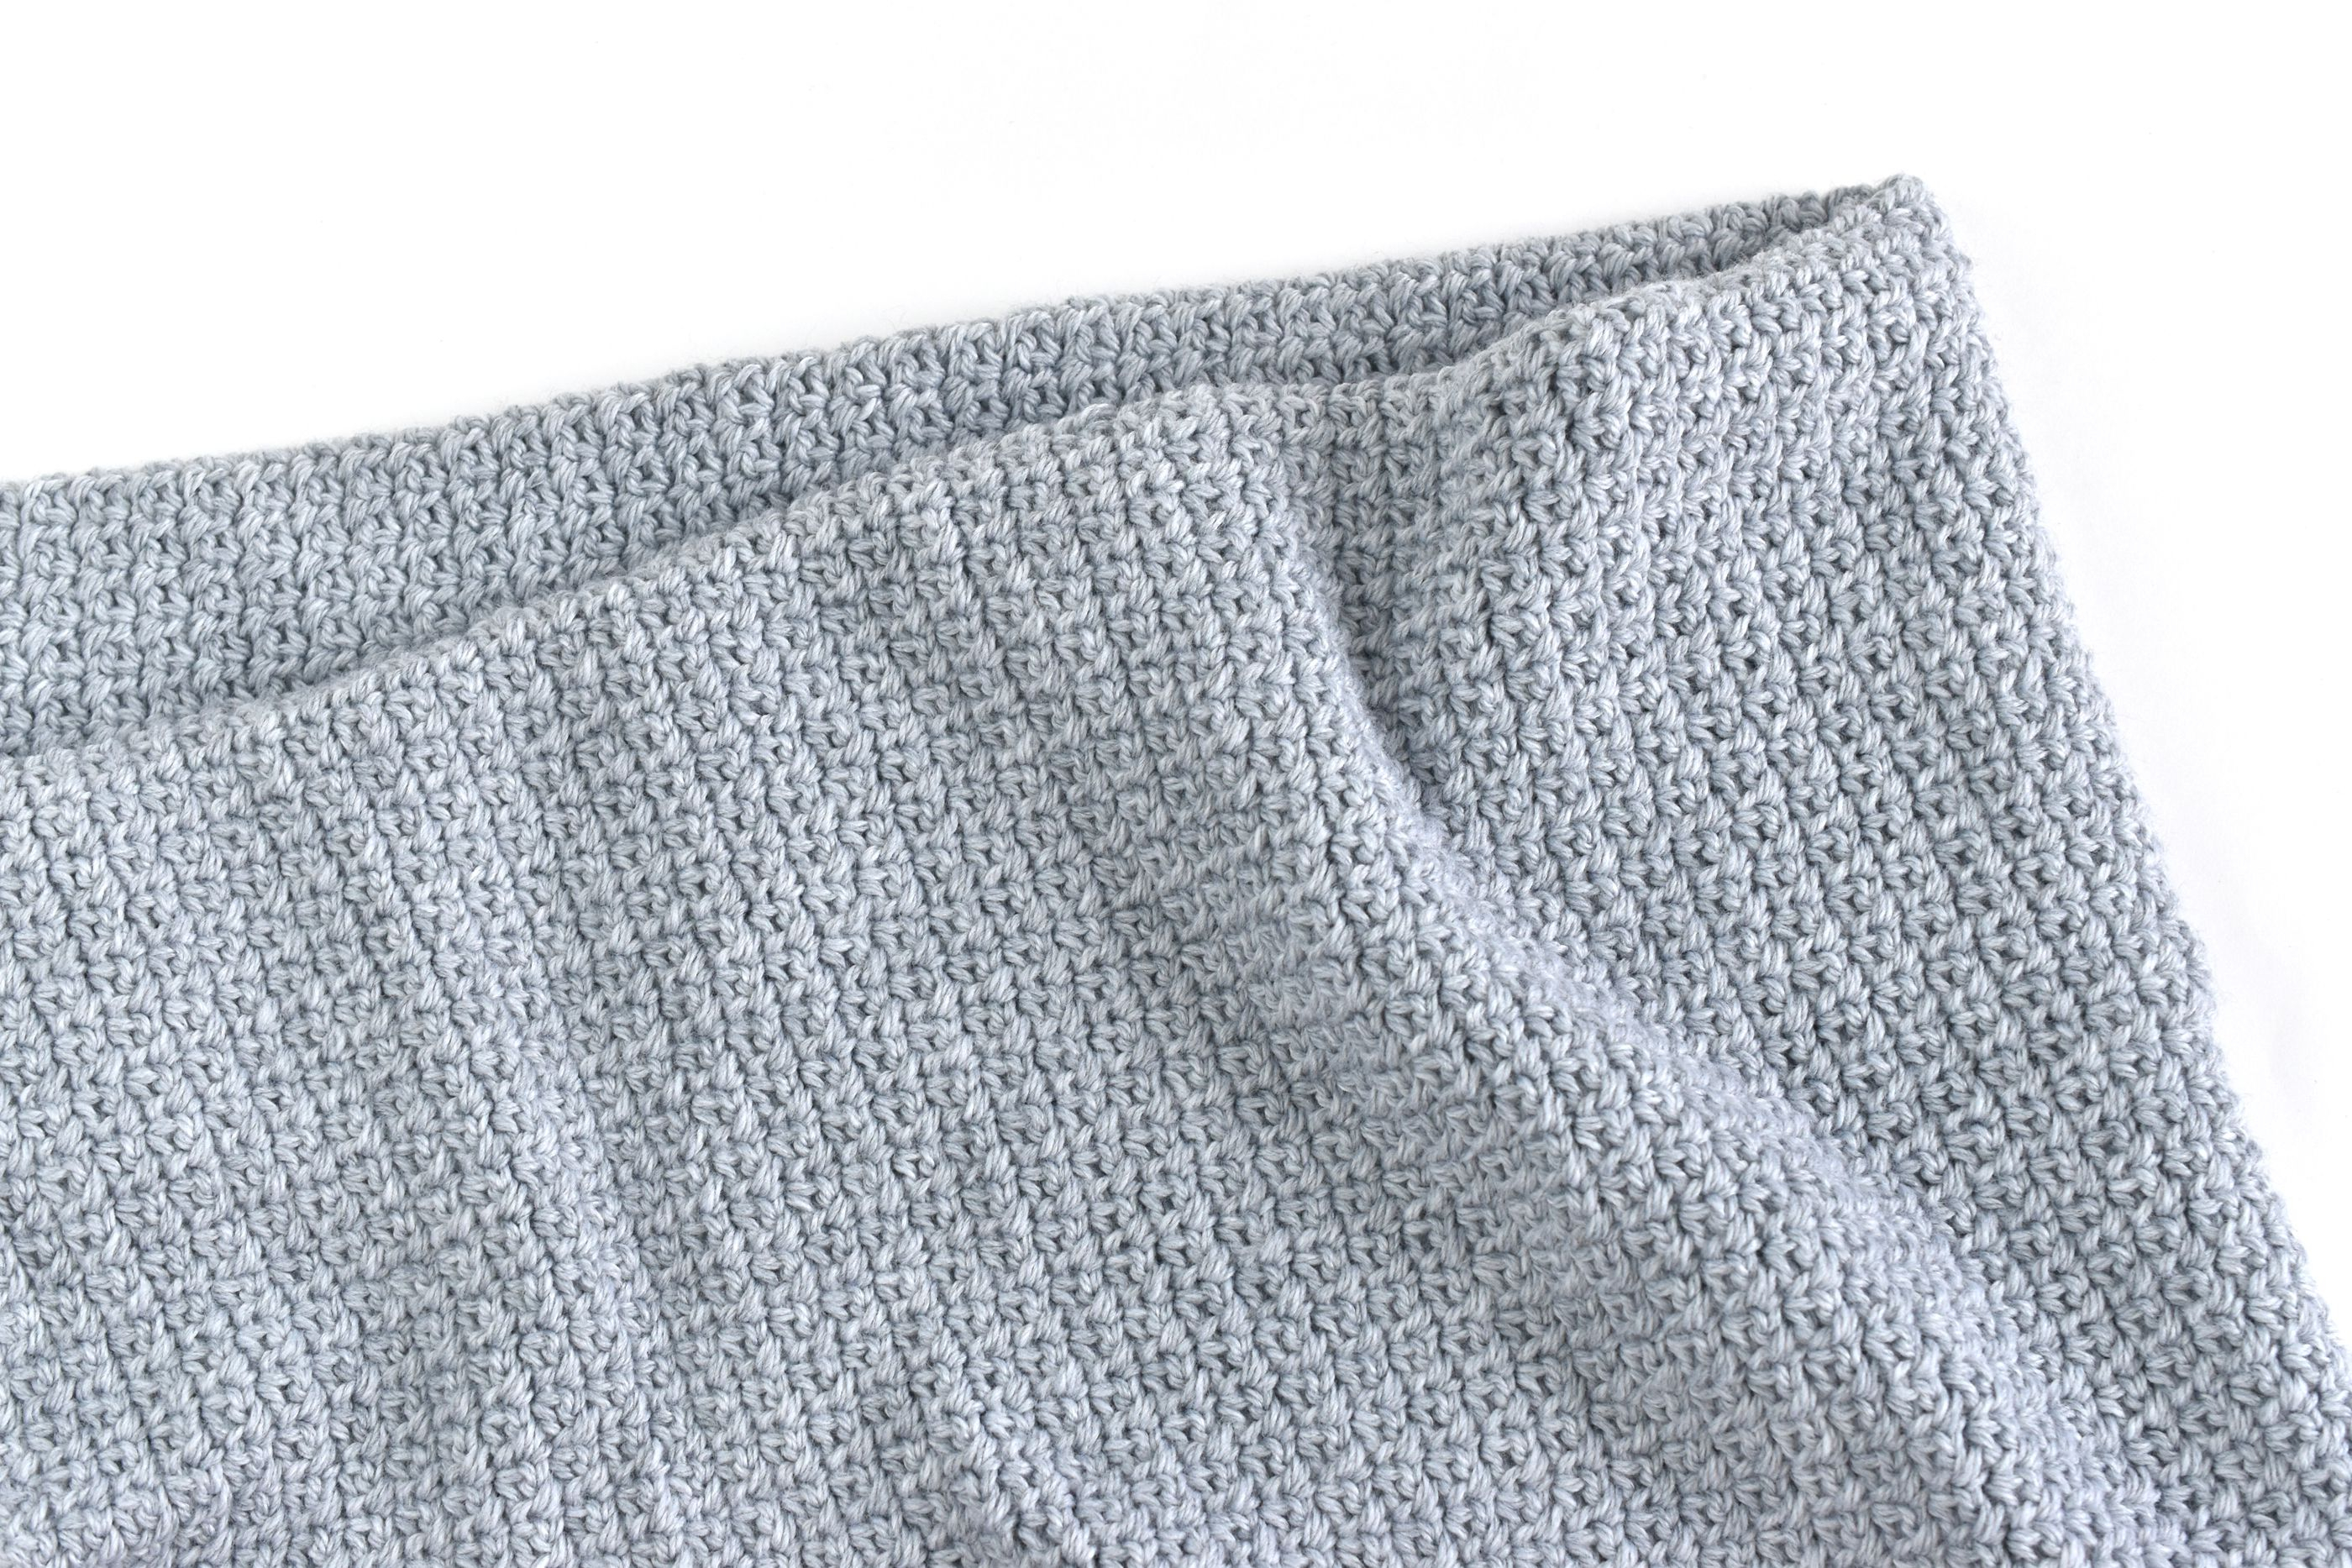 Simple Crochet Blanket Patterns Fast Free Easy Crochet Ba Blanket Pattern